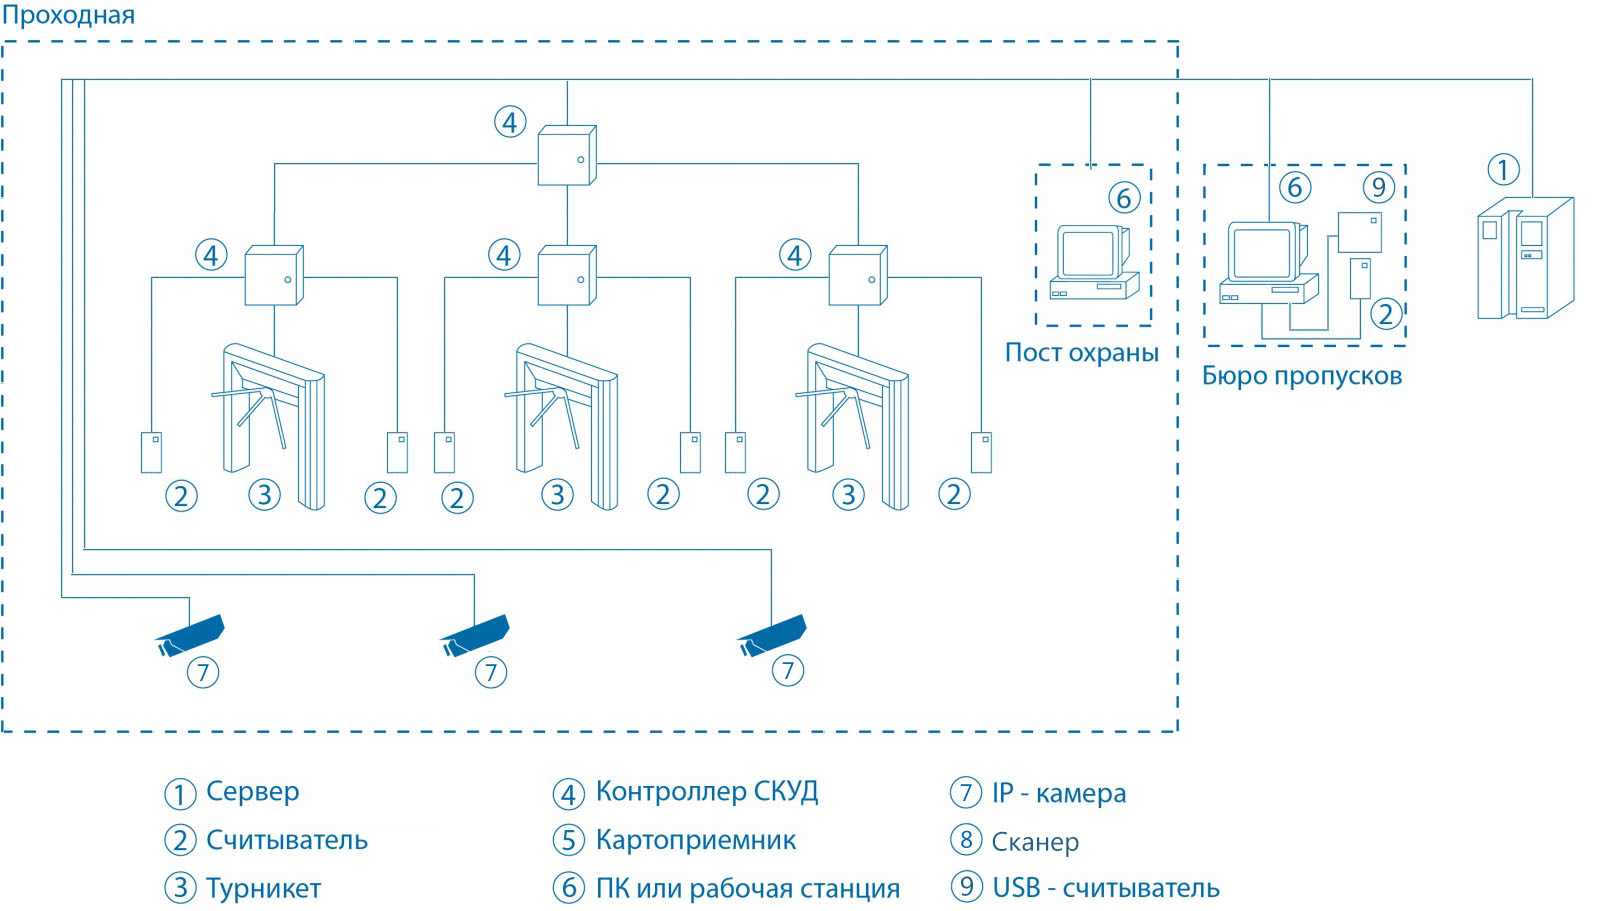 Схема проходной на базе ИСО «Орион»